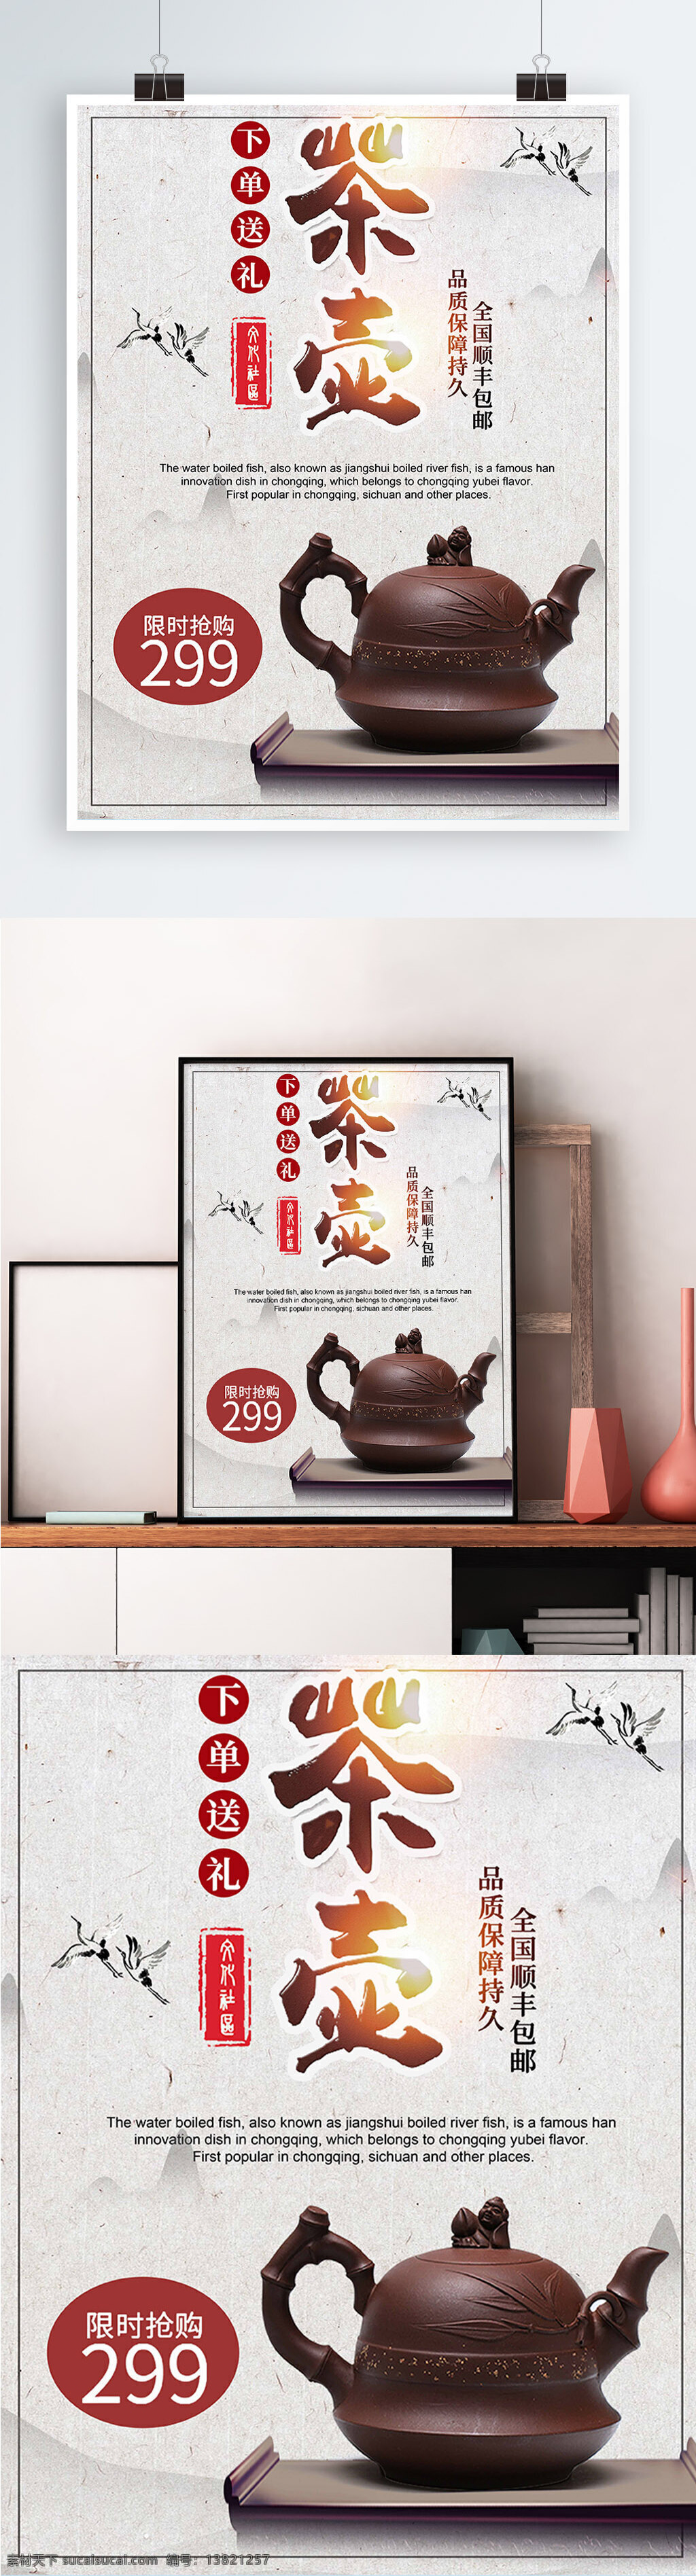 白色 背景 简约 中国 风 茶壶 促销 宣传海报 商场 中国风 大气 上新